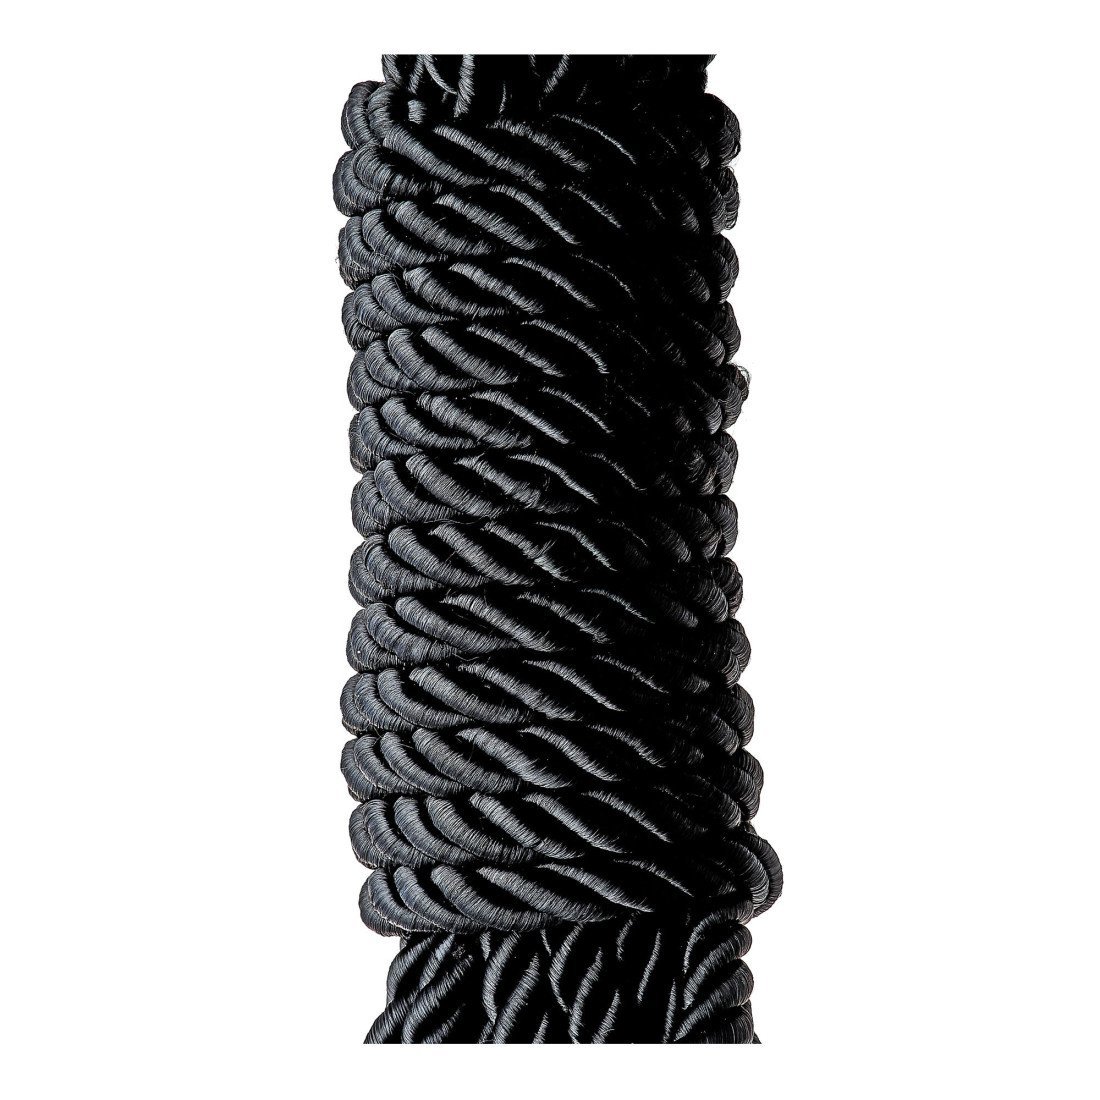 Suvaržymo virvė „Deluxe Bondage Rope“, 5 m - Blaze